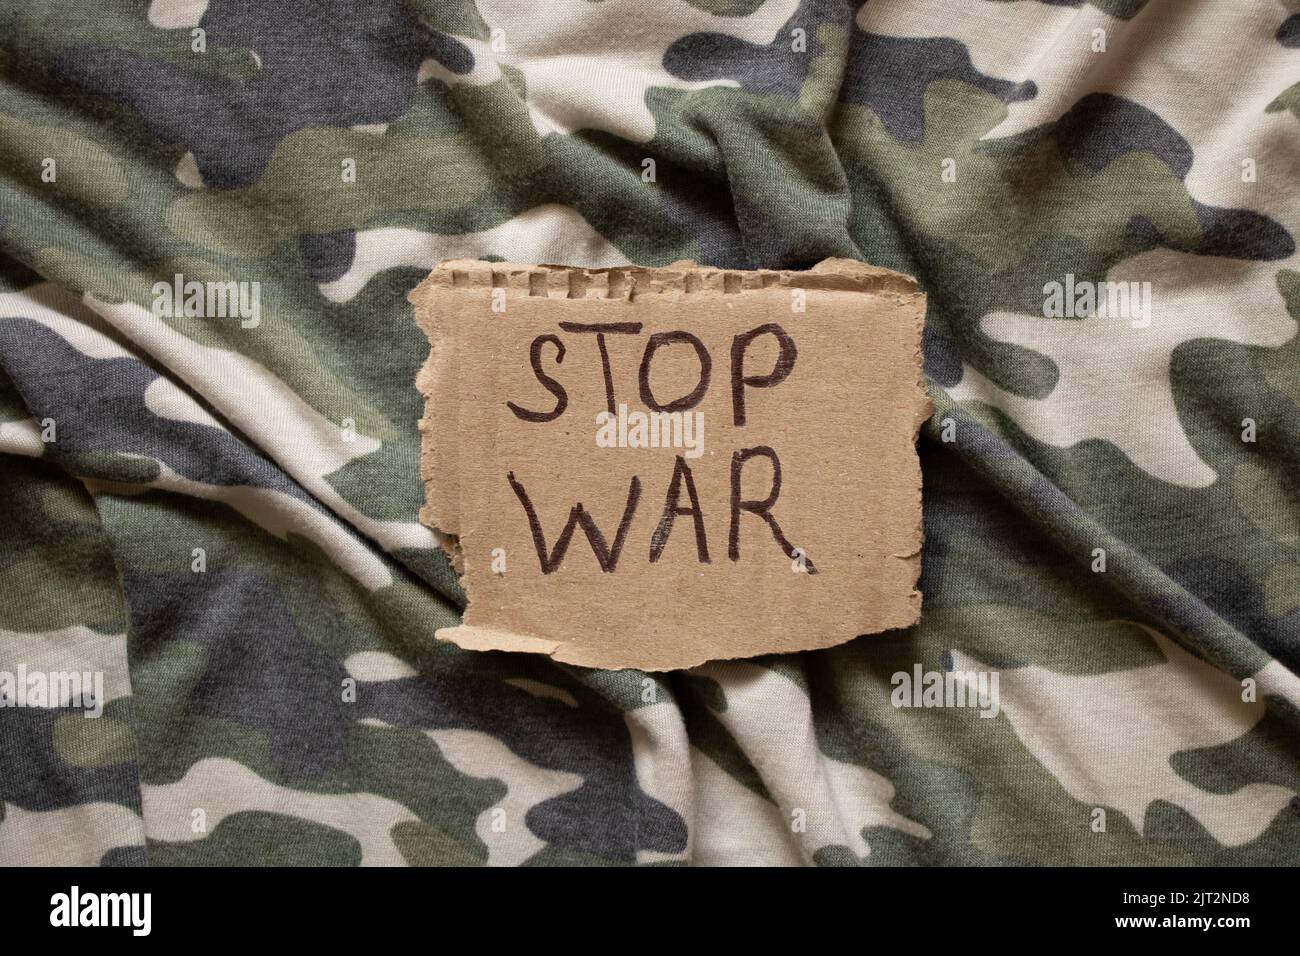 L'arrêt de la guerre est écrit sur du papier qui se trouve sur l'uniforme militaire de camouflage du soldat, l'action de protestation, les vêtements militaires Banque D'Images